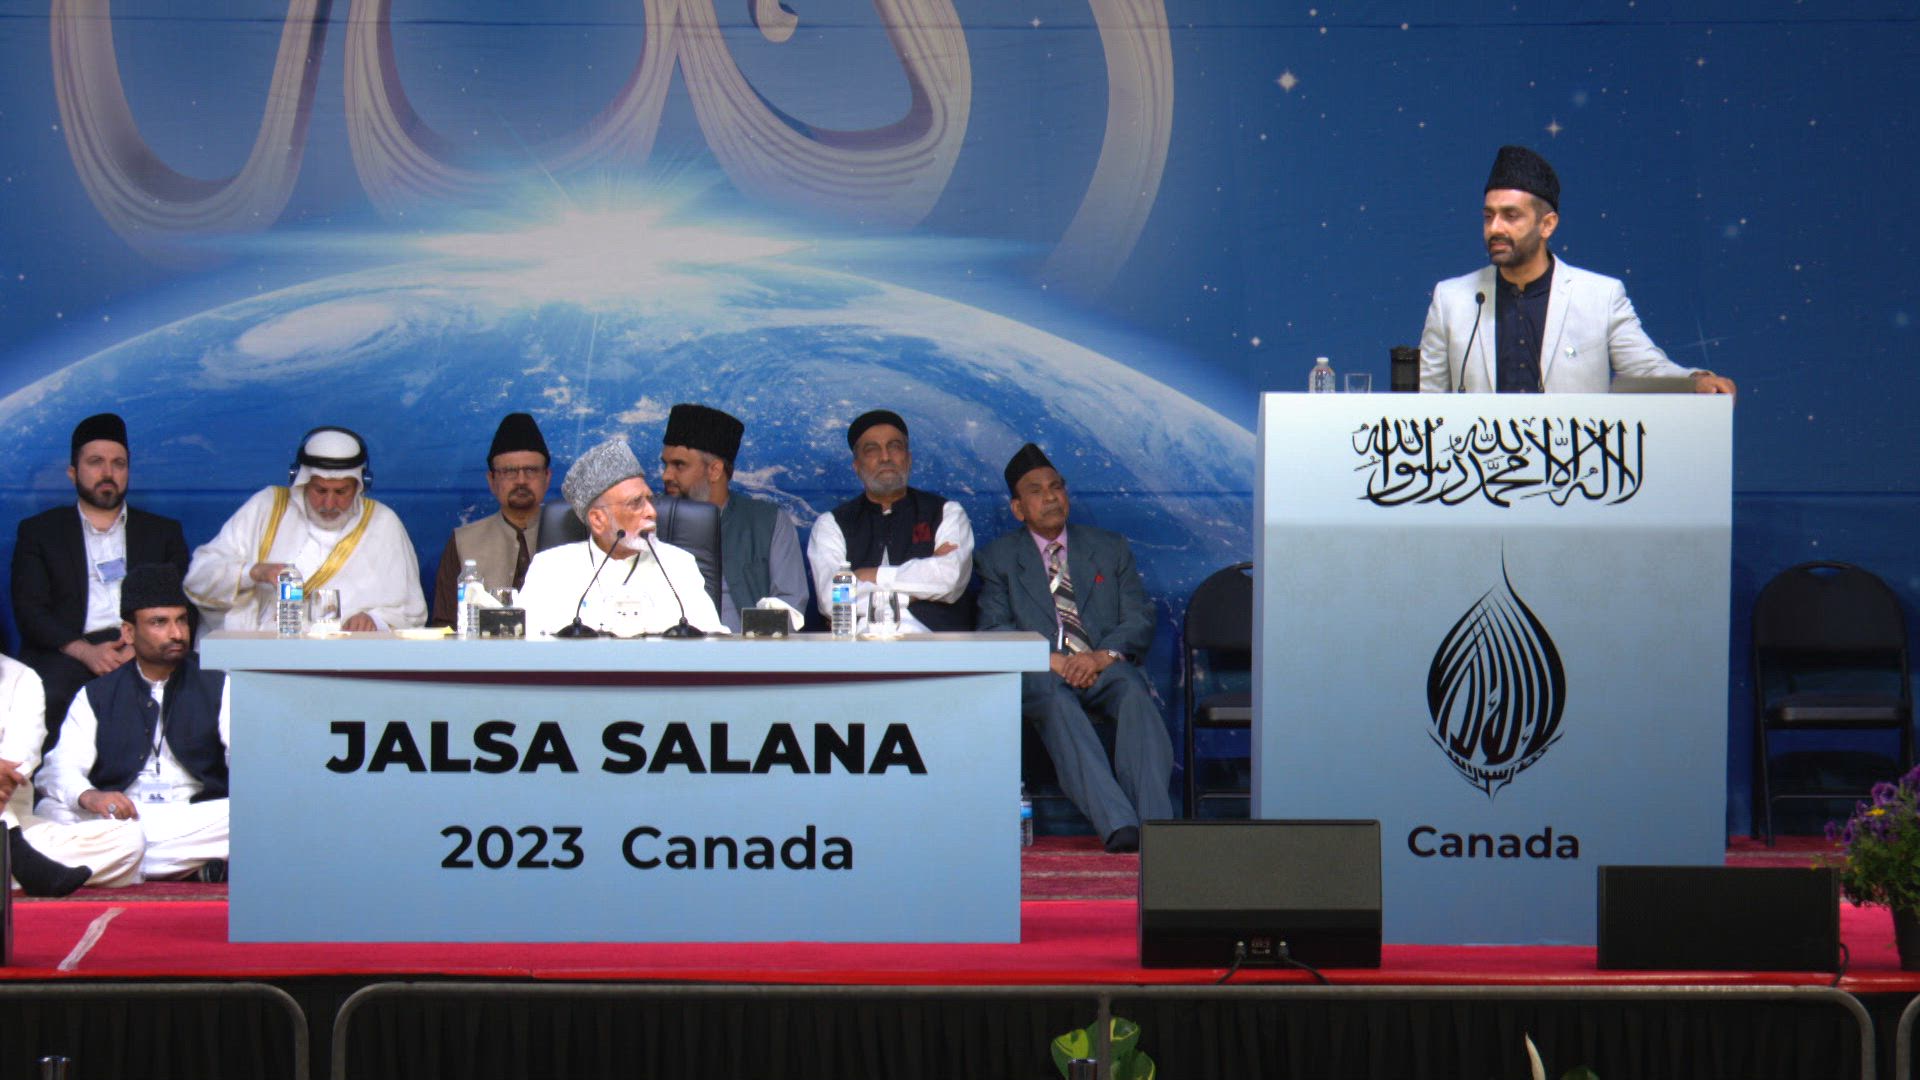 Jalsa Salana Speeches